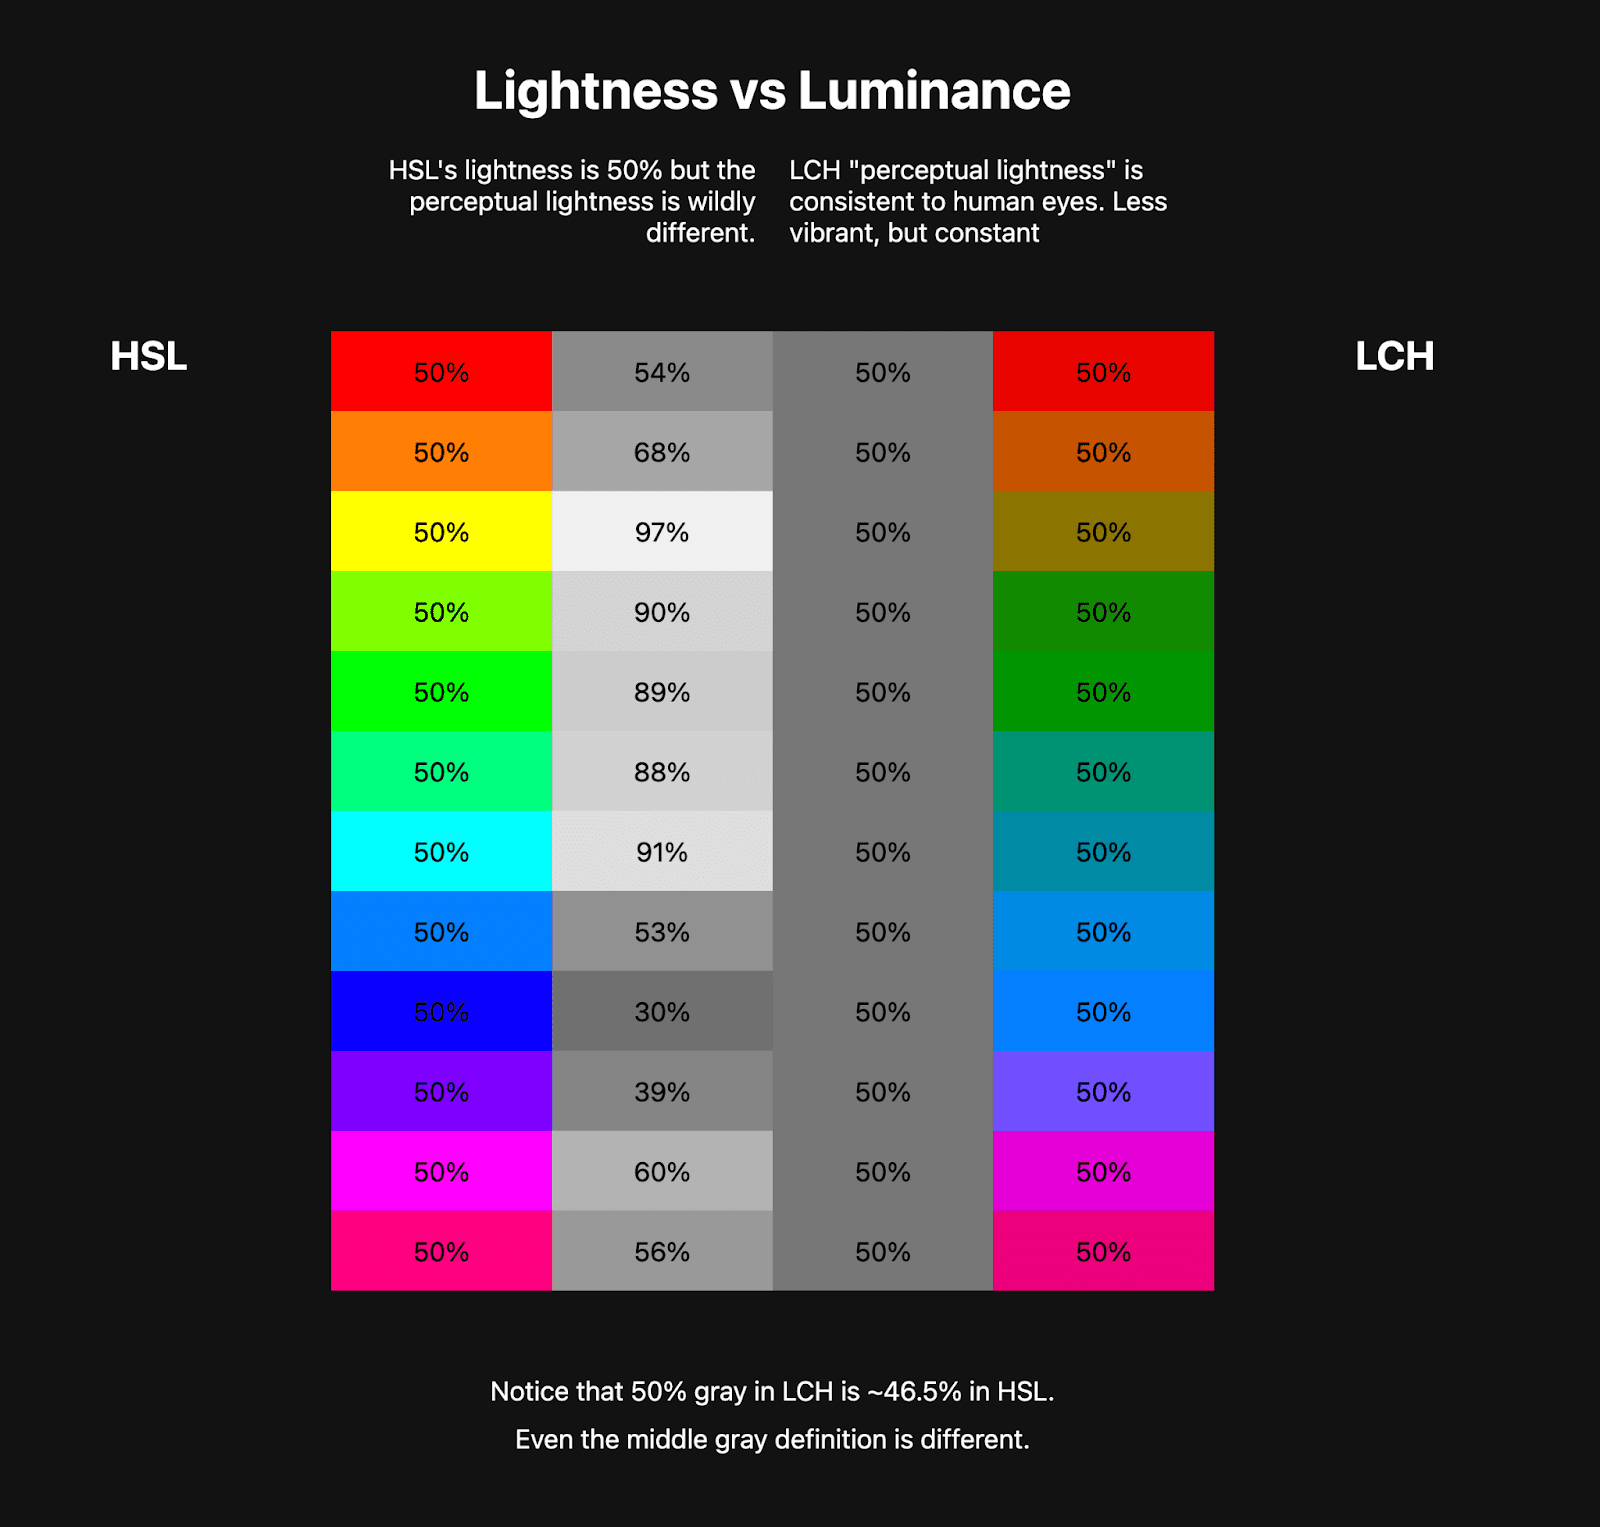 两个颜色表并列显示。第一个表格显示的是大约 10 种颜色的 HSL 彩虹，旁边是代表这些 HSL 颜色亮度的灰度颜色。第二个表格显示的是 LCH 彩虹，色彩鲜艳得多，但旁边的灰度颜色是一致的。
这表明了 LCH 如何具有健康的恒定亮度值，而 HSL 则没有。